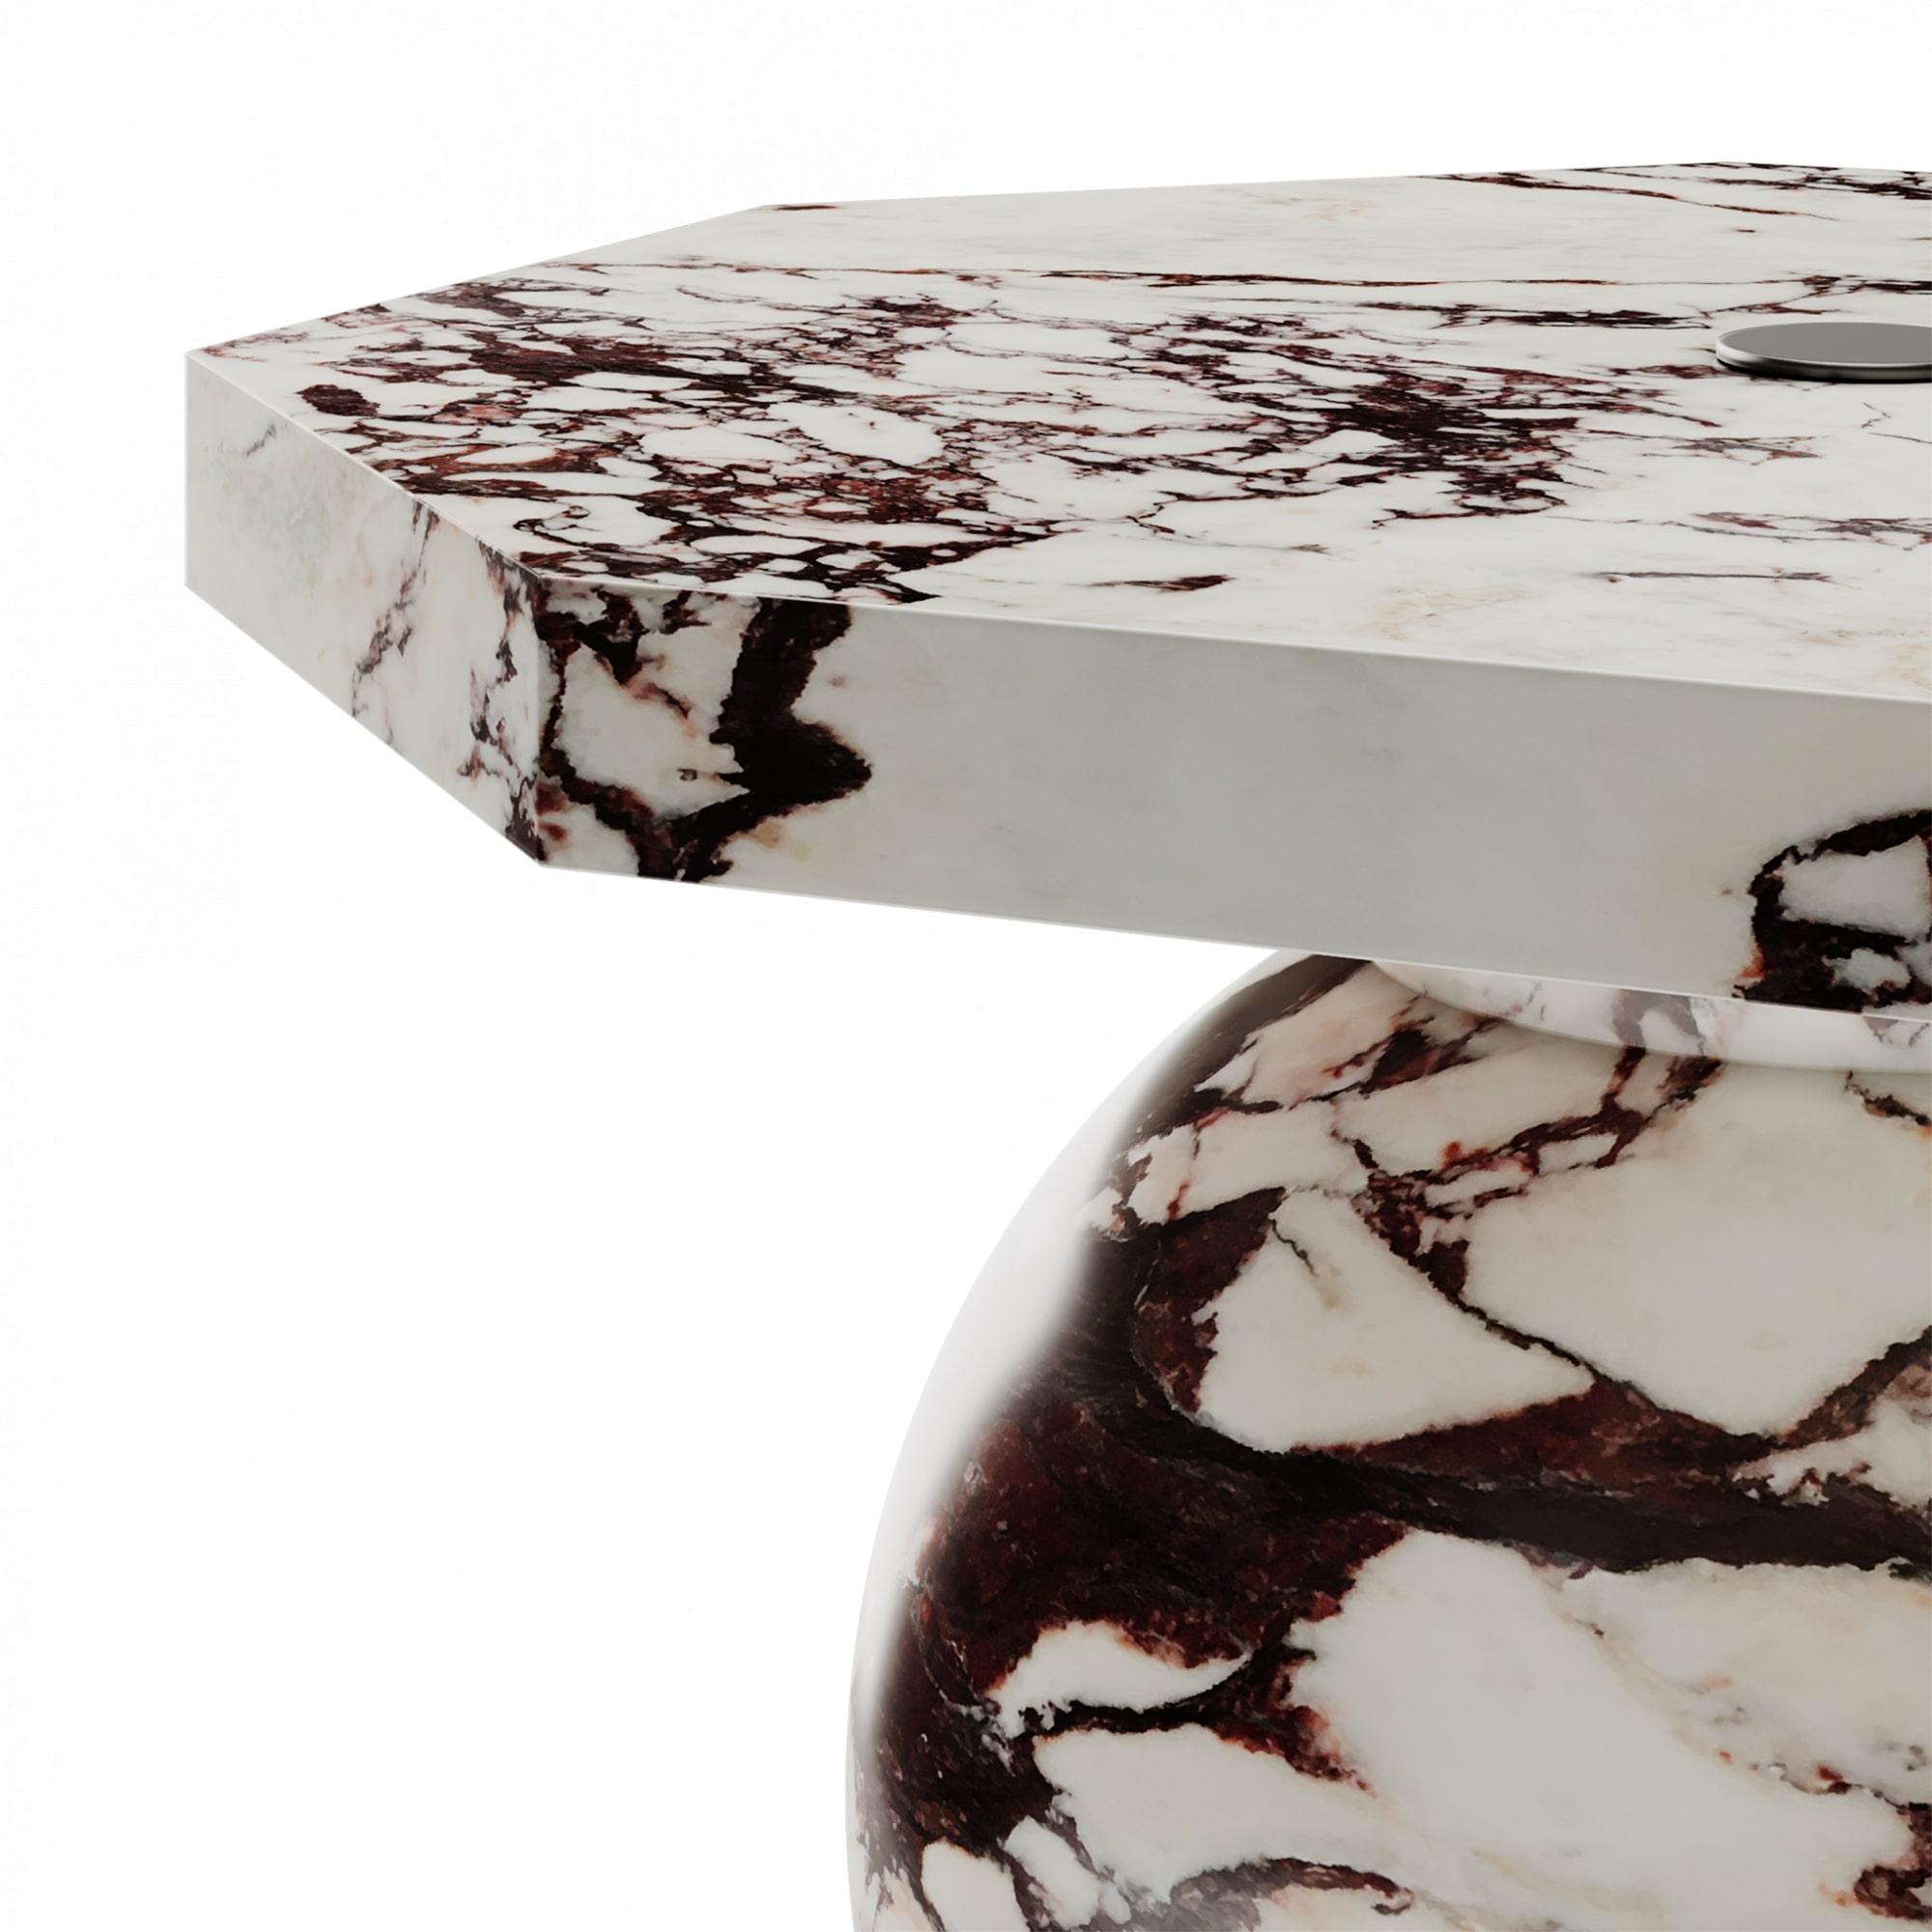 Table d'appoint moderne pour l'extérieur, sphère pollock Base de parasol en marbre Calacatta poli

La table d'appoint Pollock est une table d'appoint d'extérieur qui sert également de base à un audacieux parasol. Il est parfait pour les journées